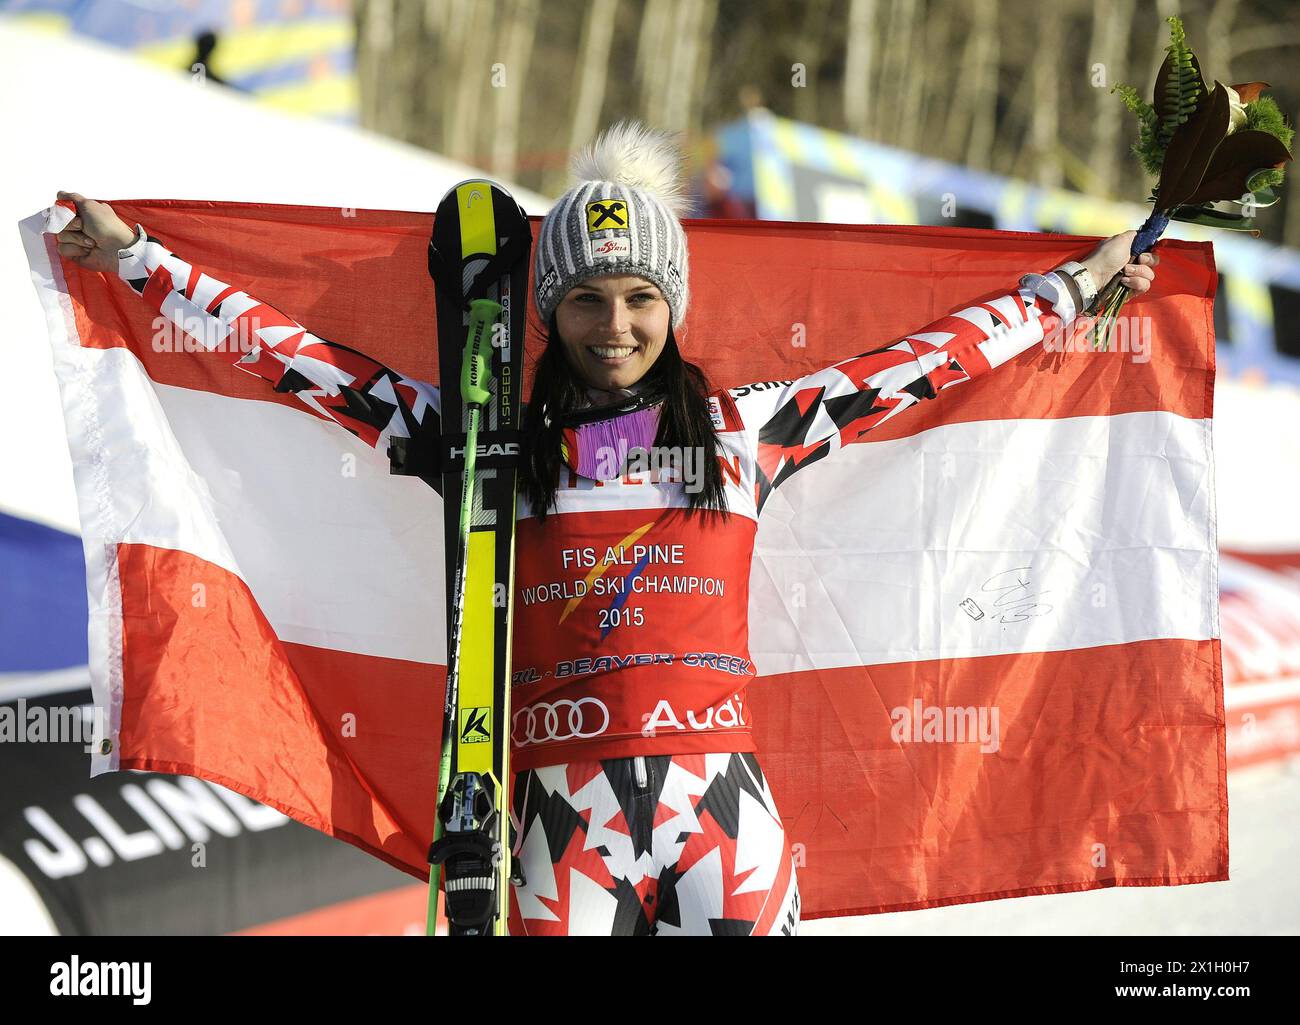 Die Österreicherin Anna Fenninger reagiert auf ihren zweiten Lauf des Riesenslalom-Rennens der Frauen bei der FIS Ski-Weltmeisterschaft in Beaver Creek, Colorado, USA, am 12. Februar 2015. - 20150212 PD10948 - Rechteinfo: Rights Managed (RM) Stockfoto